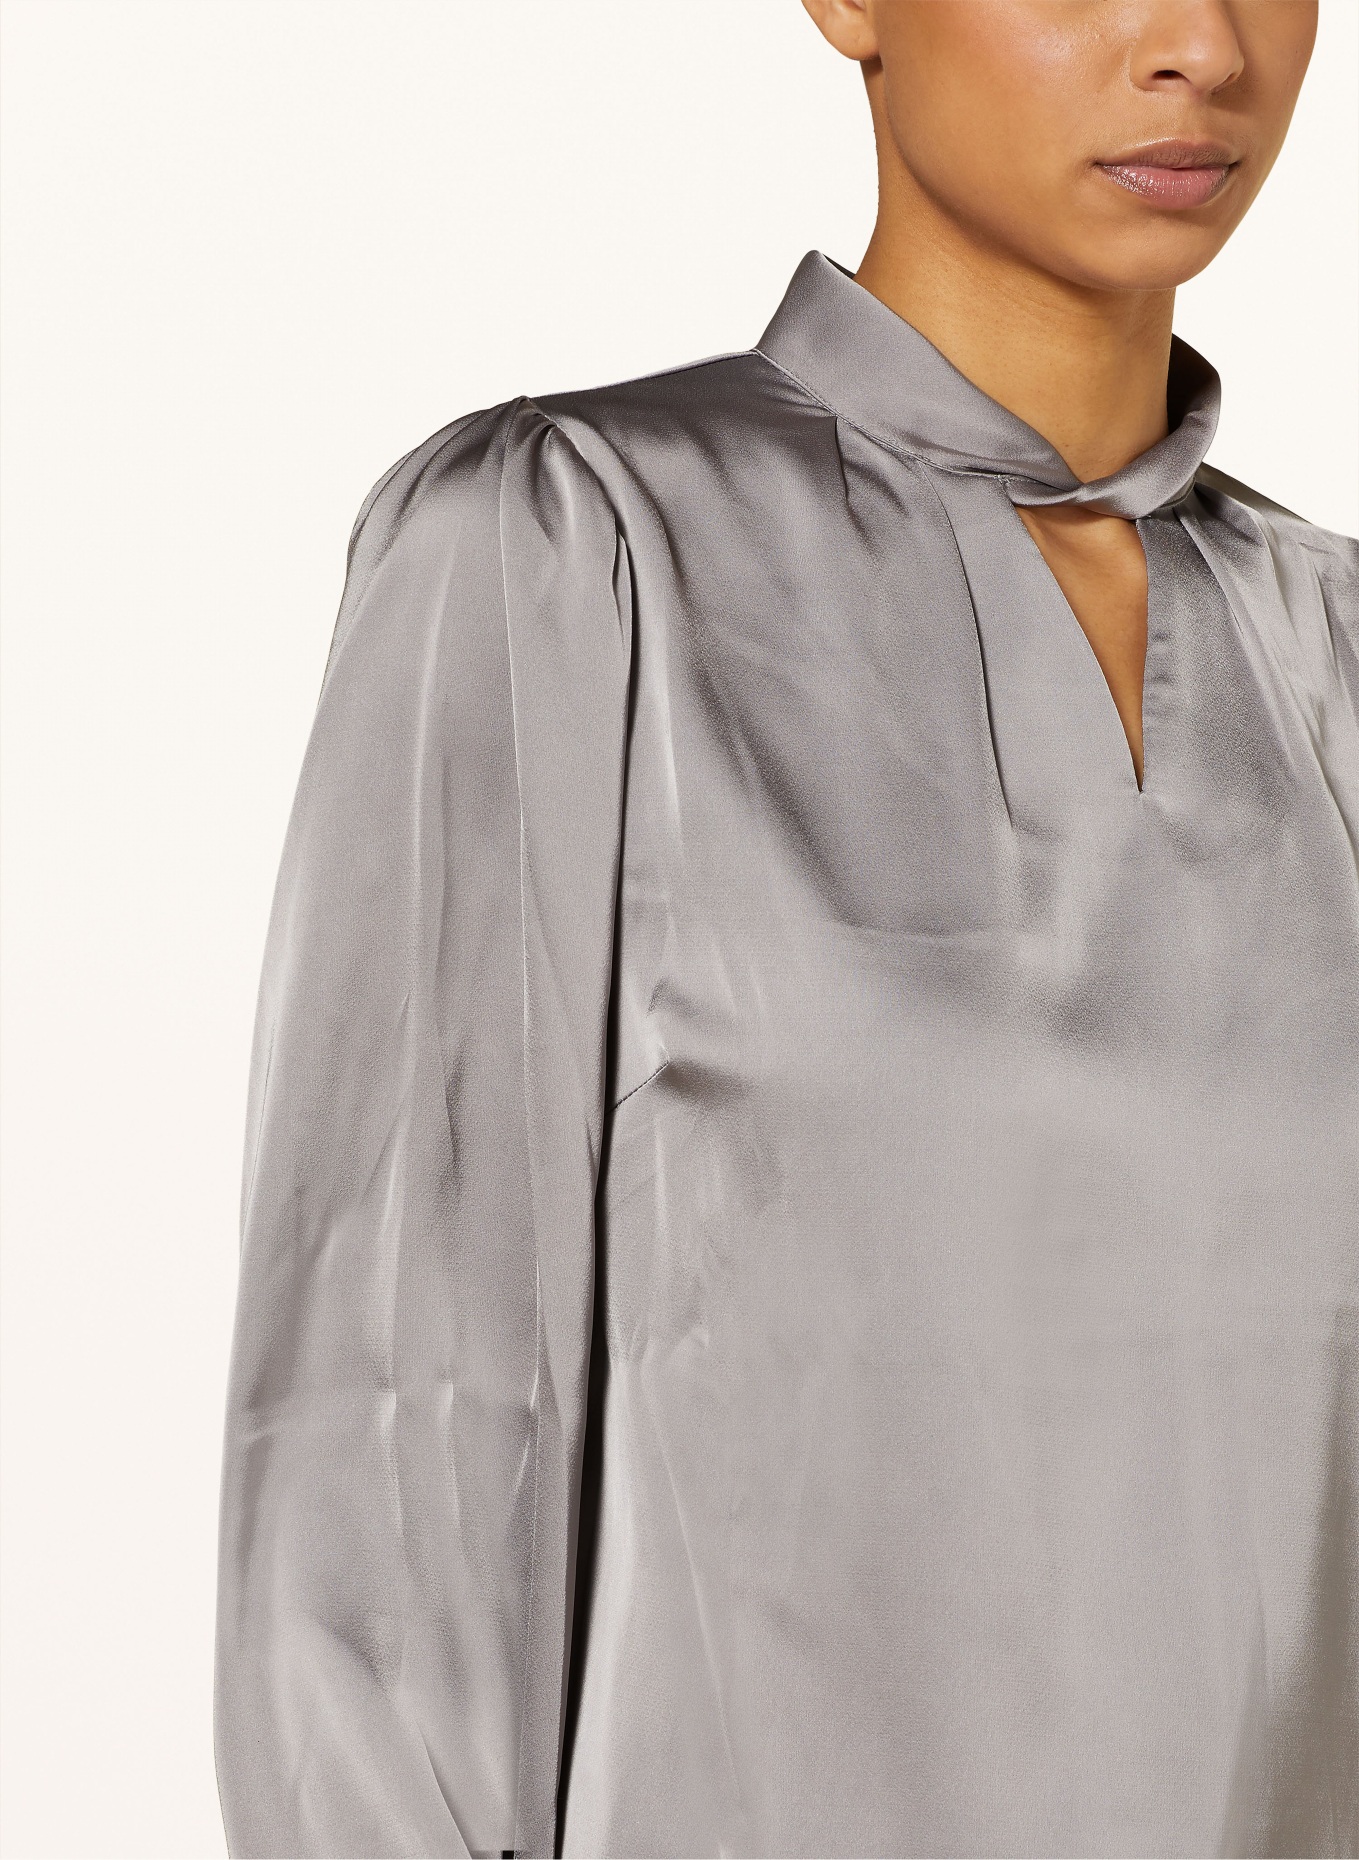 NEO NOIR Shirt blouse BONDO made of satin, Color: GRAY (Image 4)